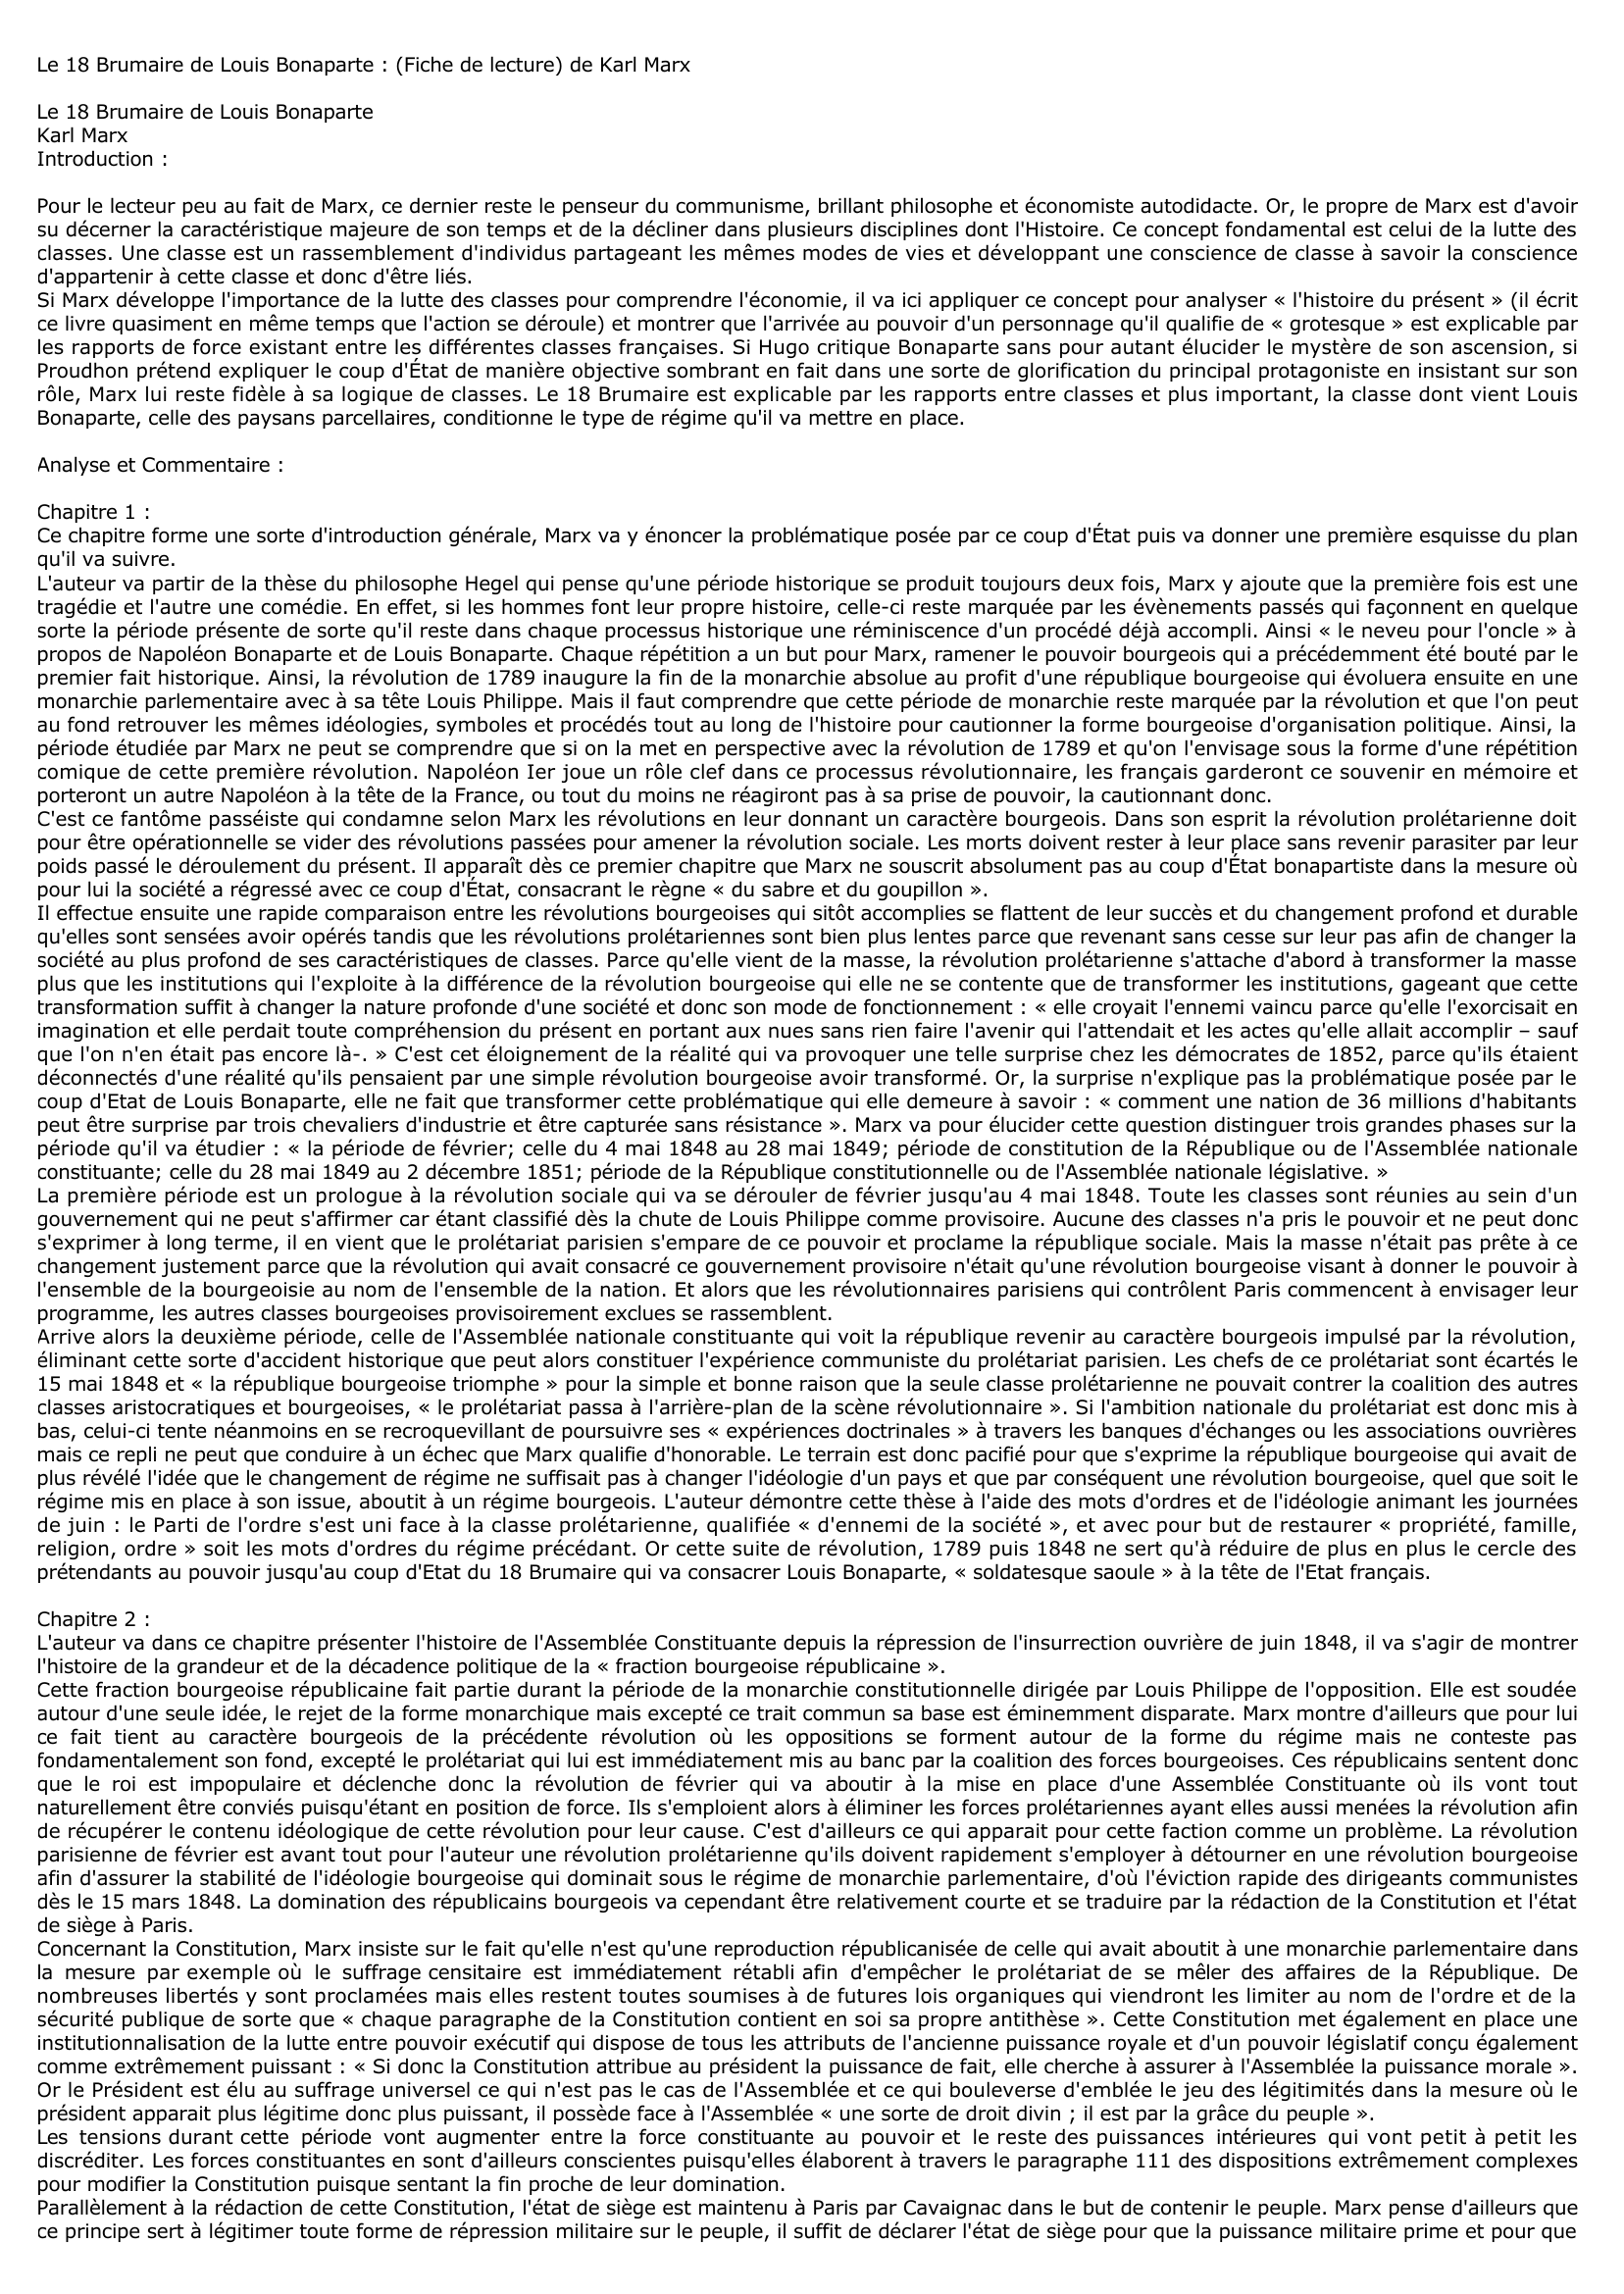 Prévisualisation du document DIX-HUIT BRUMAIRE DE LOUIS BONAPARTE (LE), Karl Marx - résumé de l'œuvre